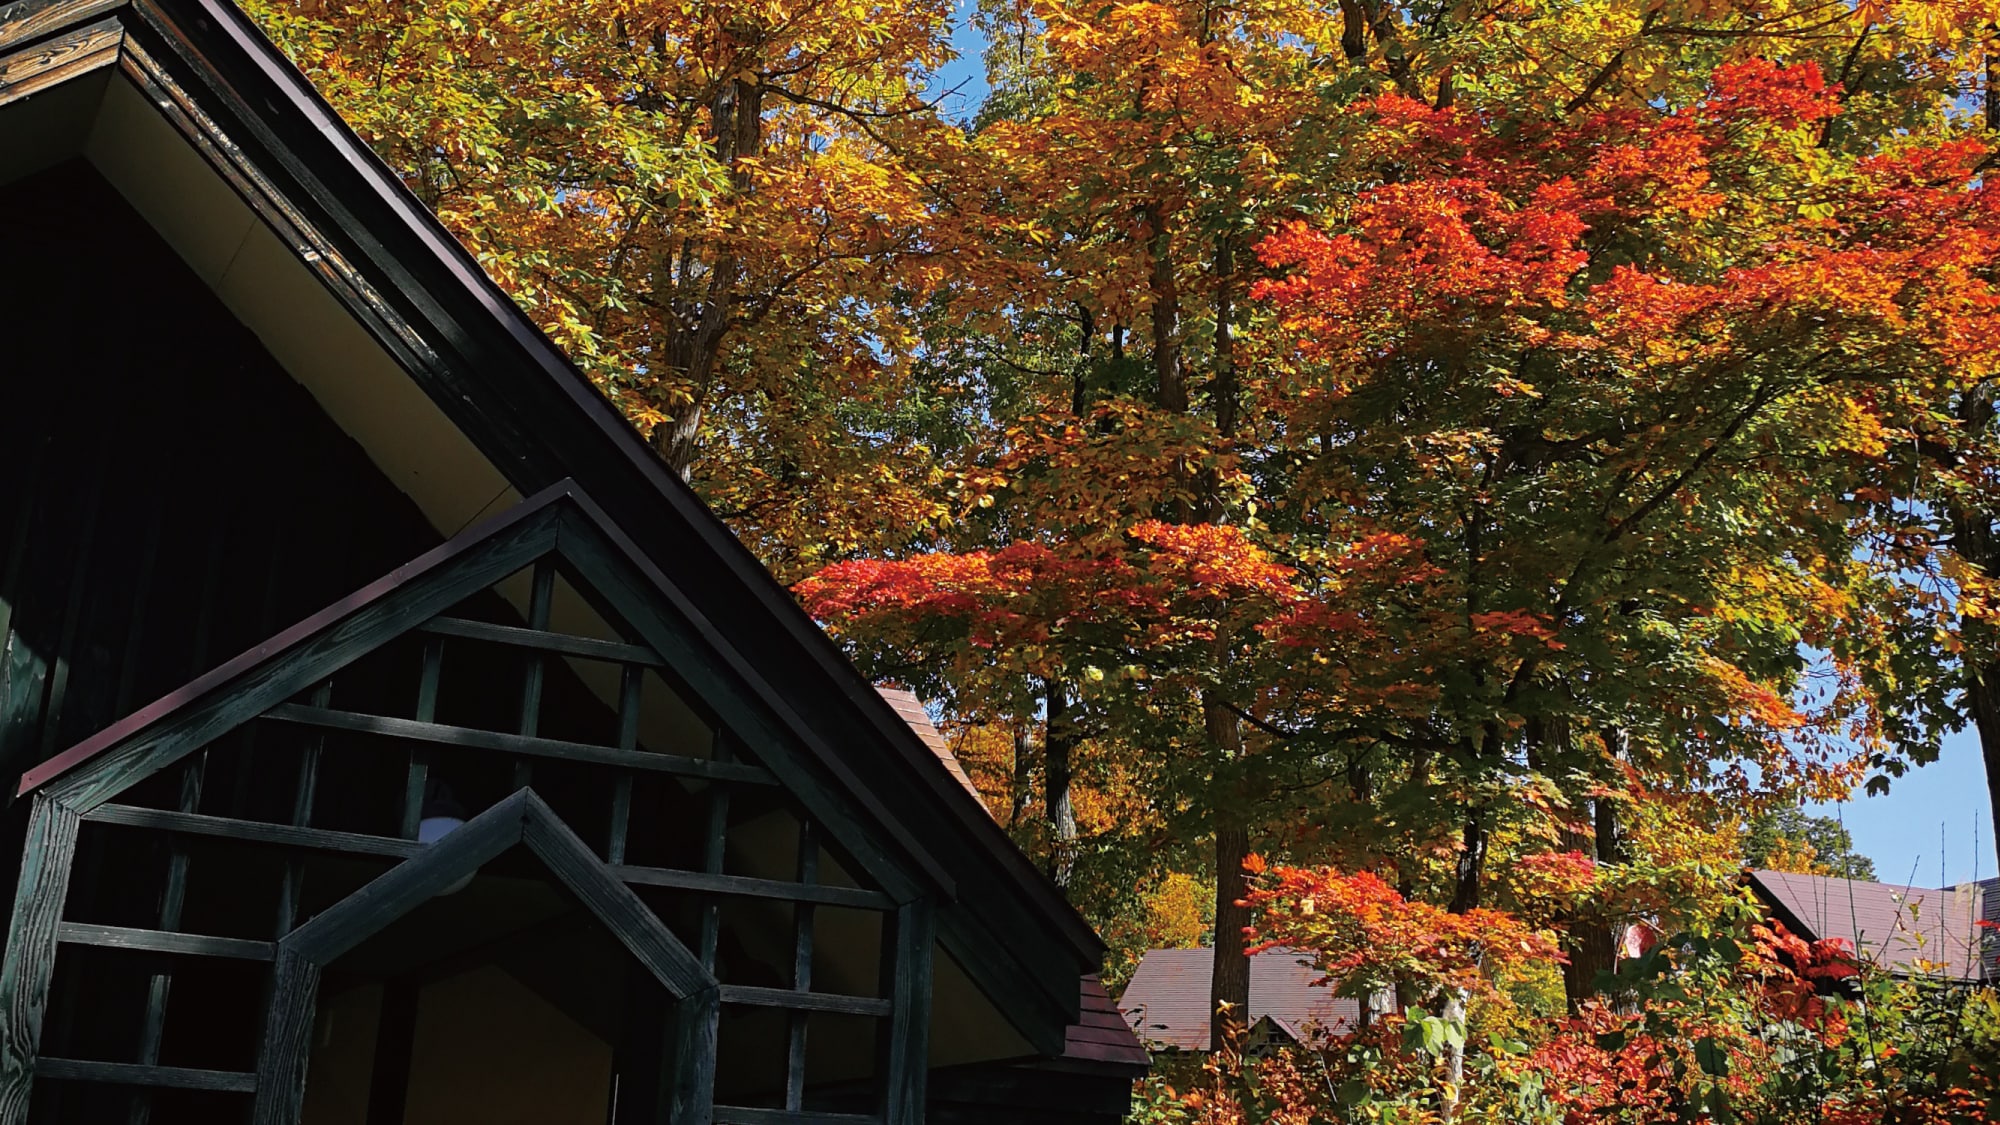 Autumn leaves season cottage